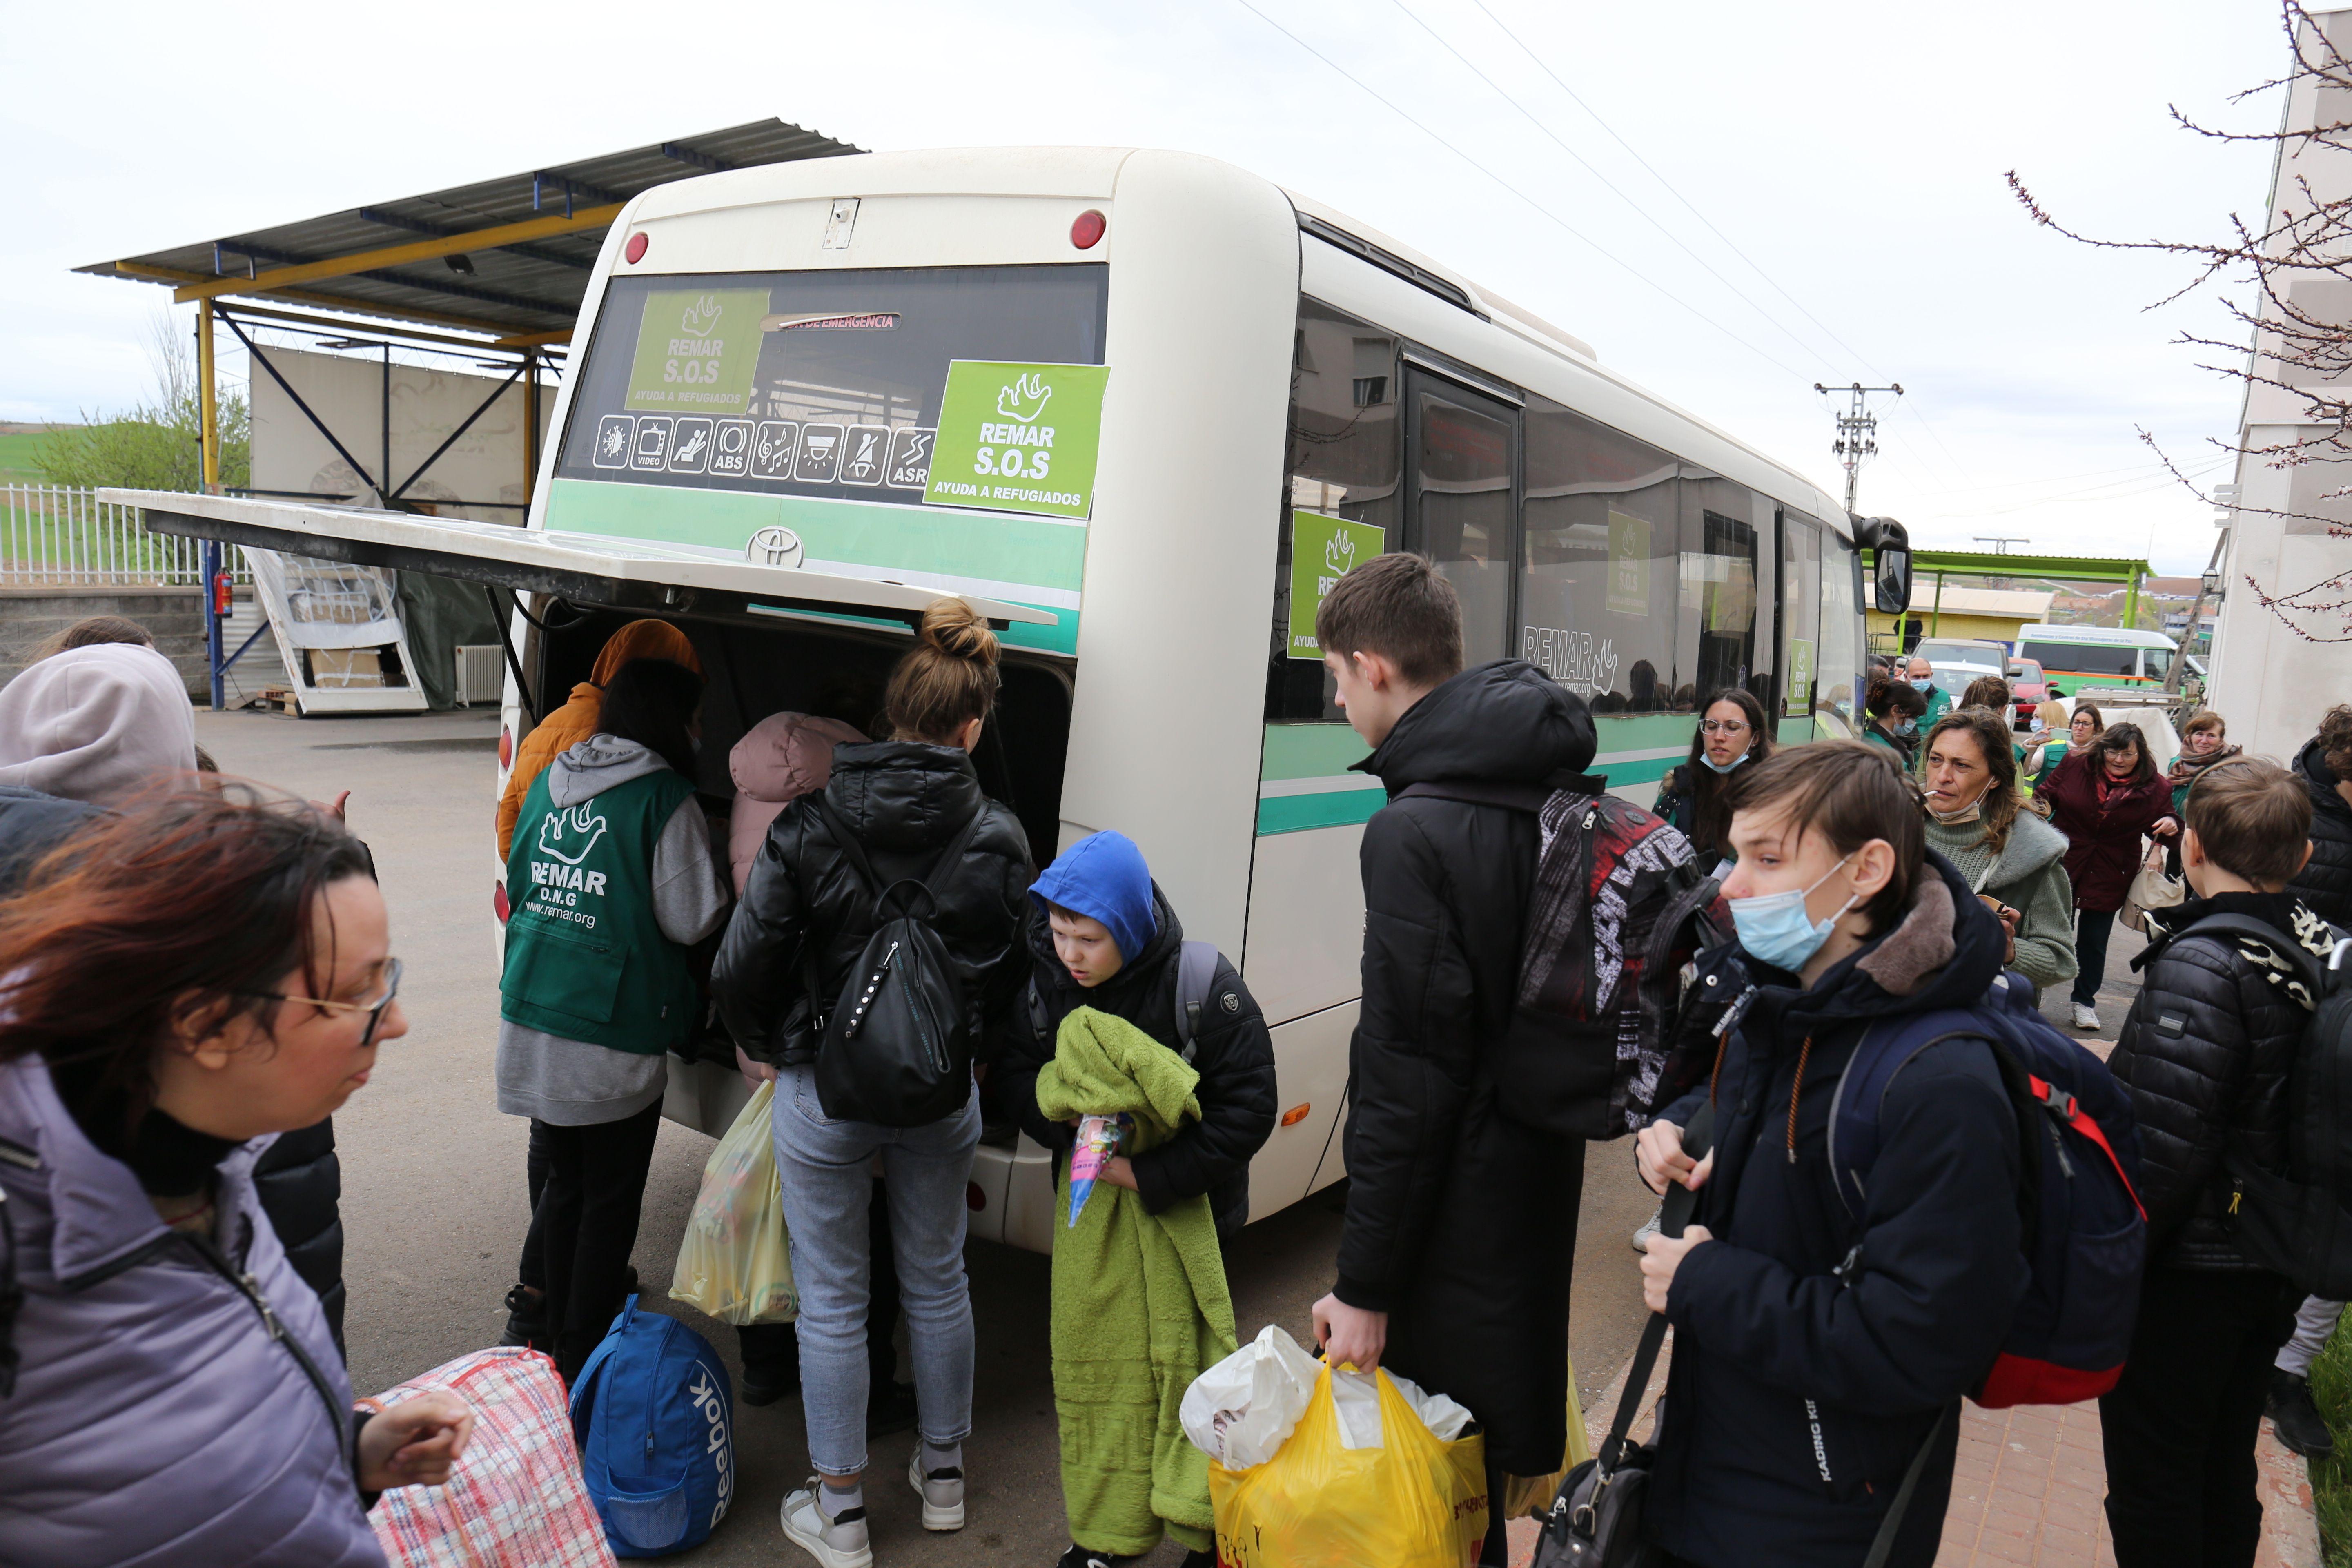 Autobus refugiados Ucrania / Europa Press